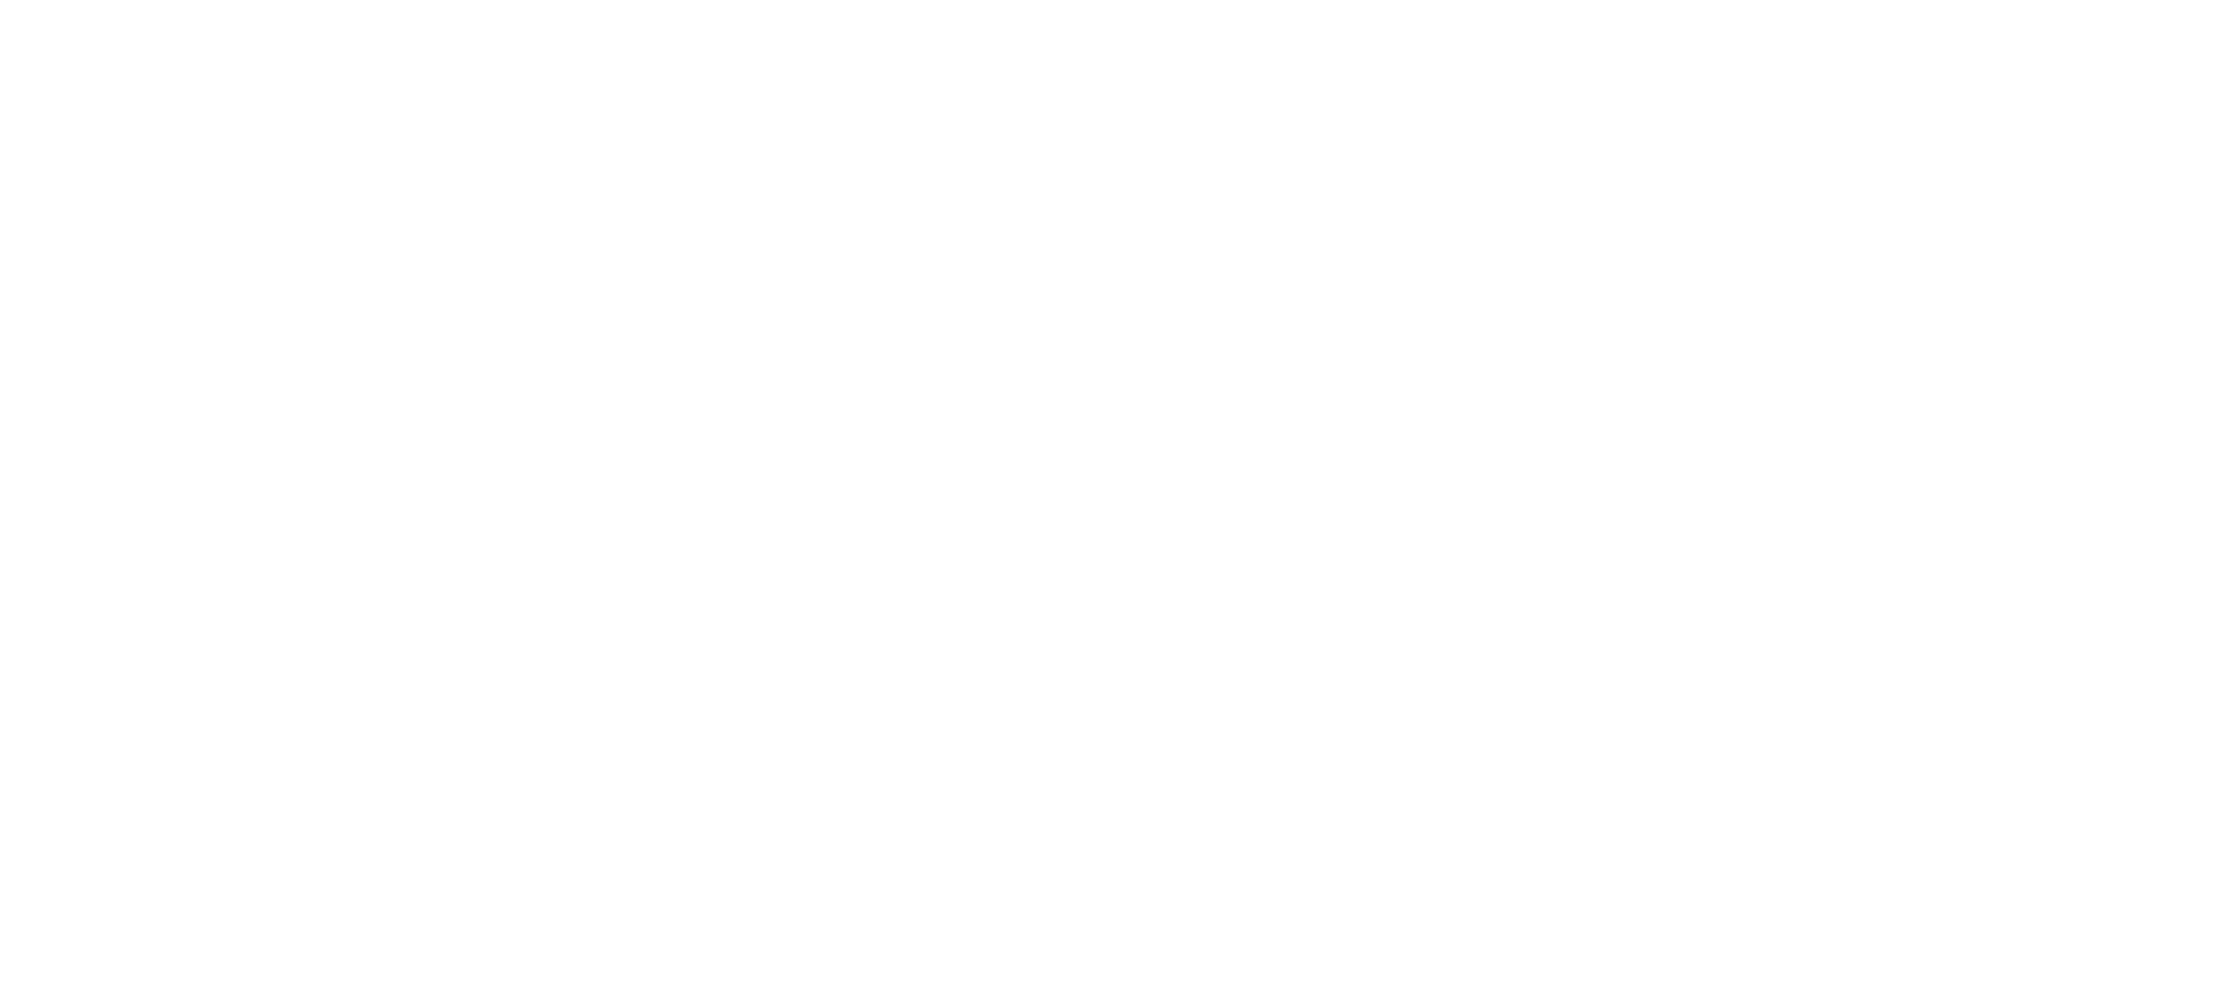 CAMH Foundation logo